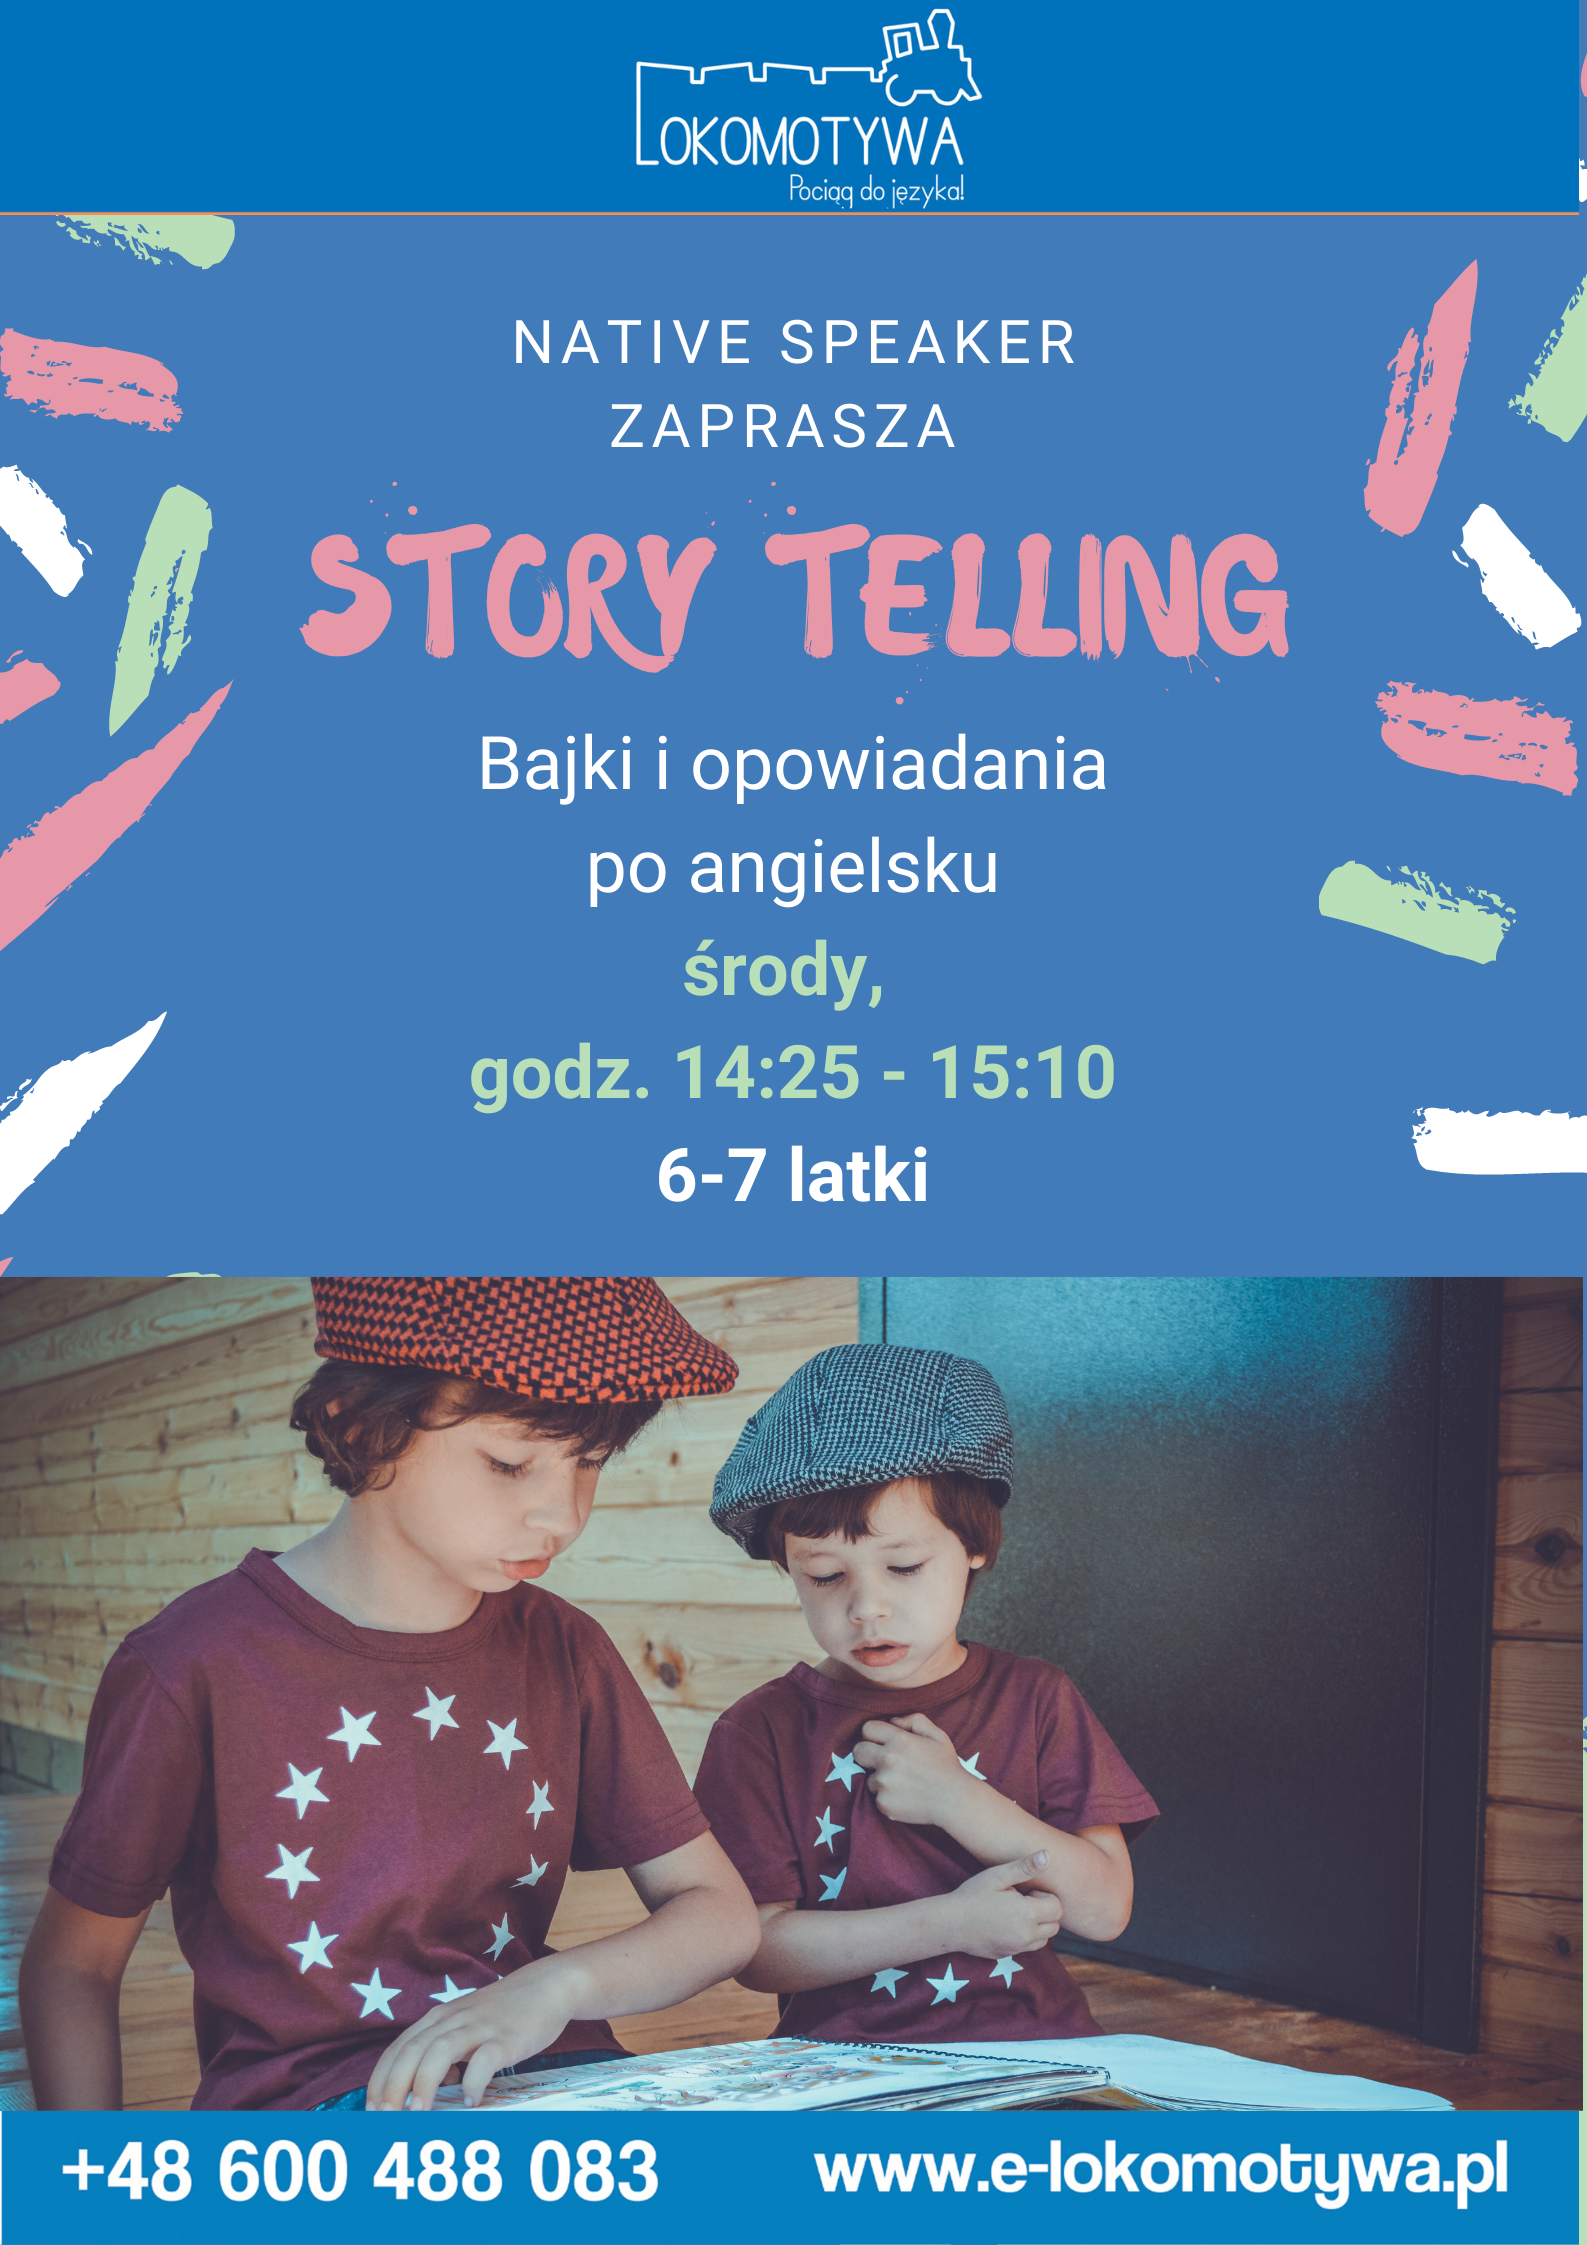 Storytelling – bajki i opowiadania z Native Speaker